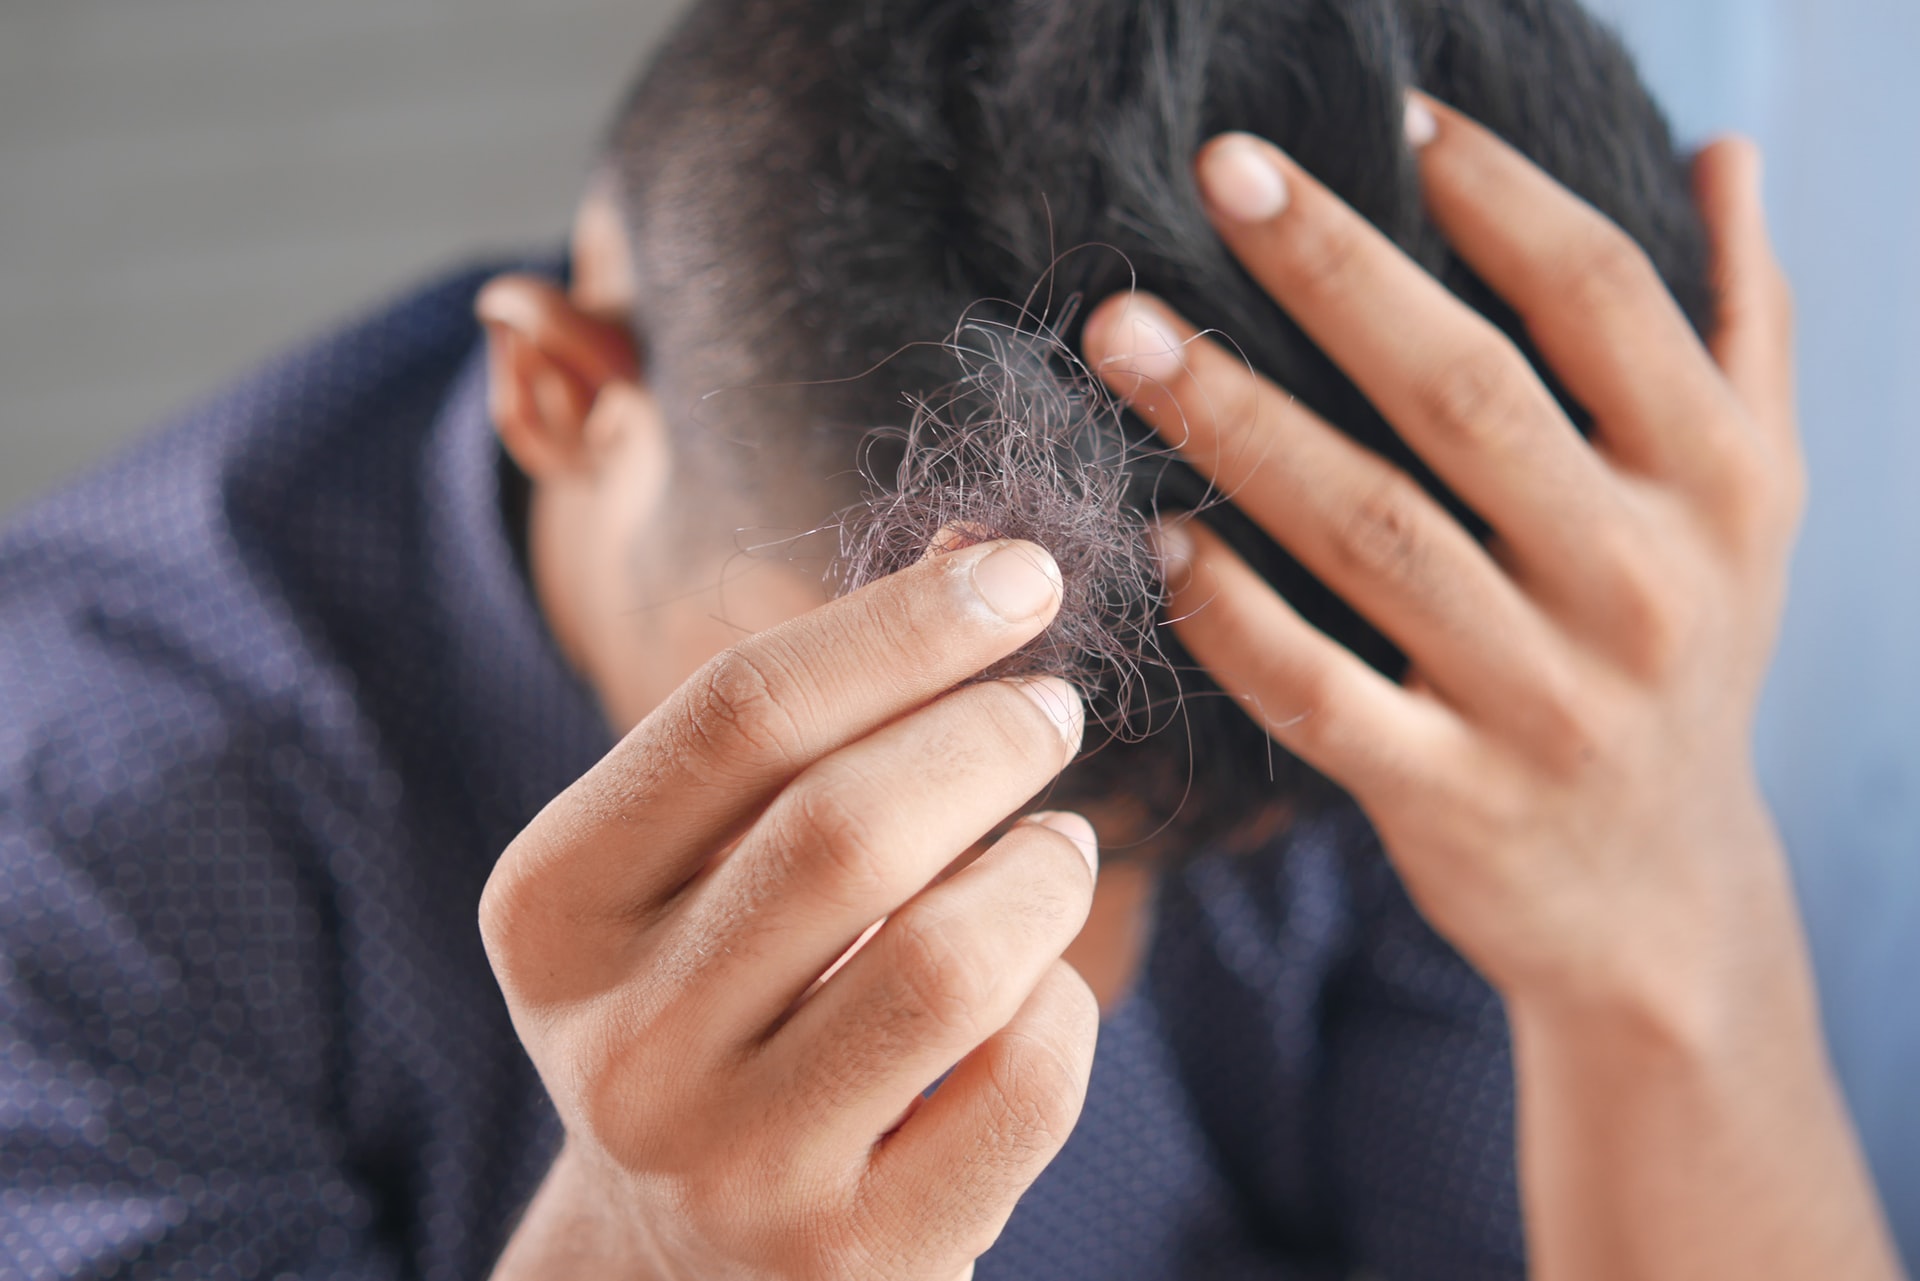 Hói đầu ở đàn ông có thể điều trị không  Vinmec